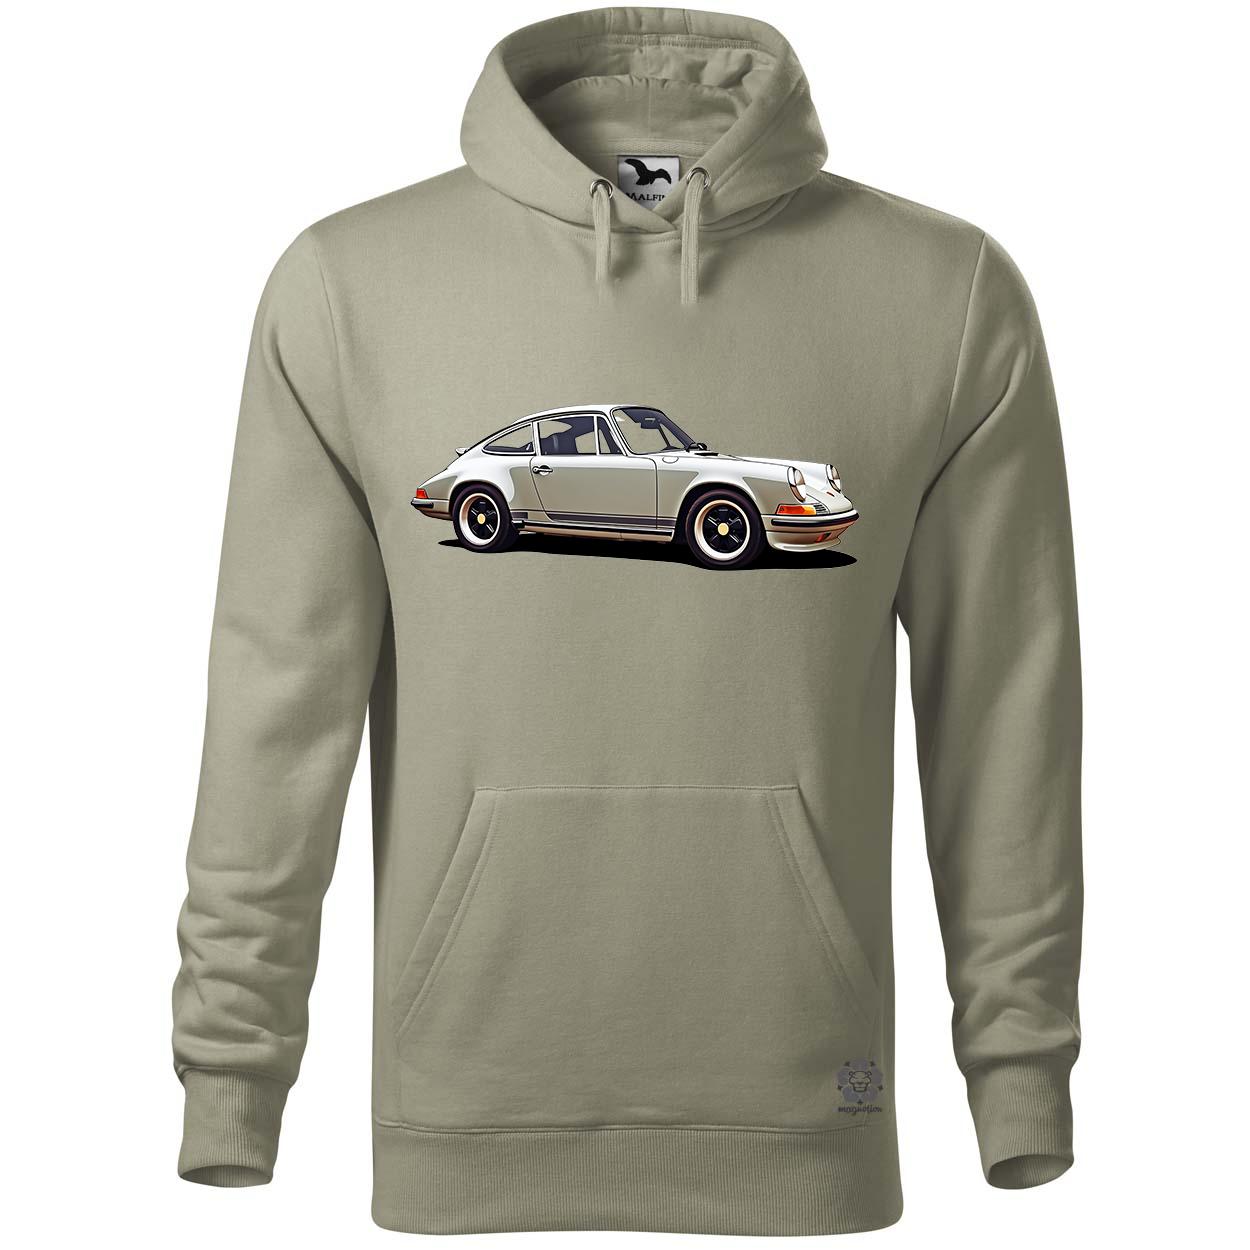 Porsche 911 rajz v1